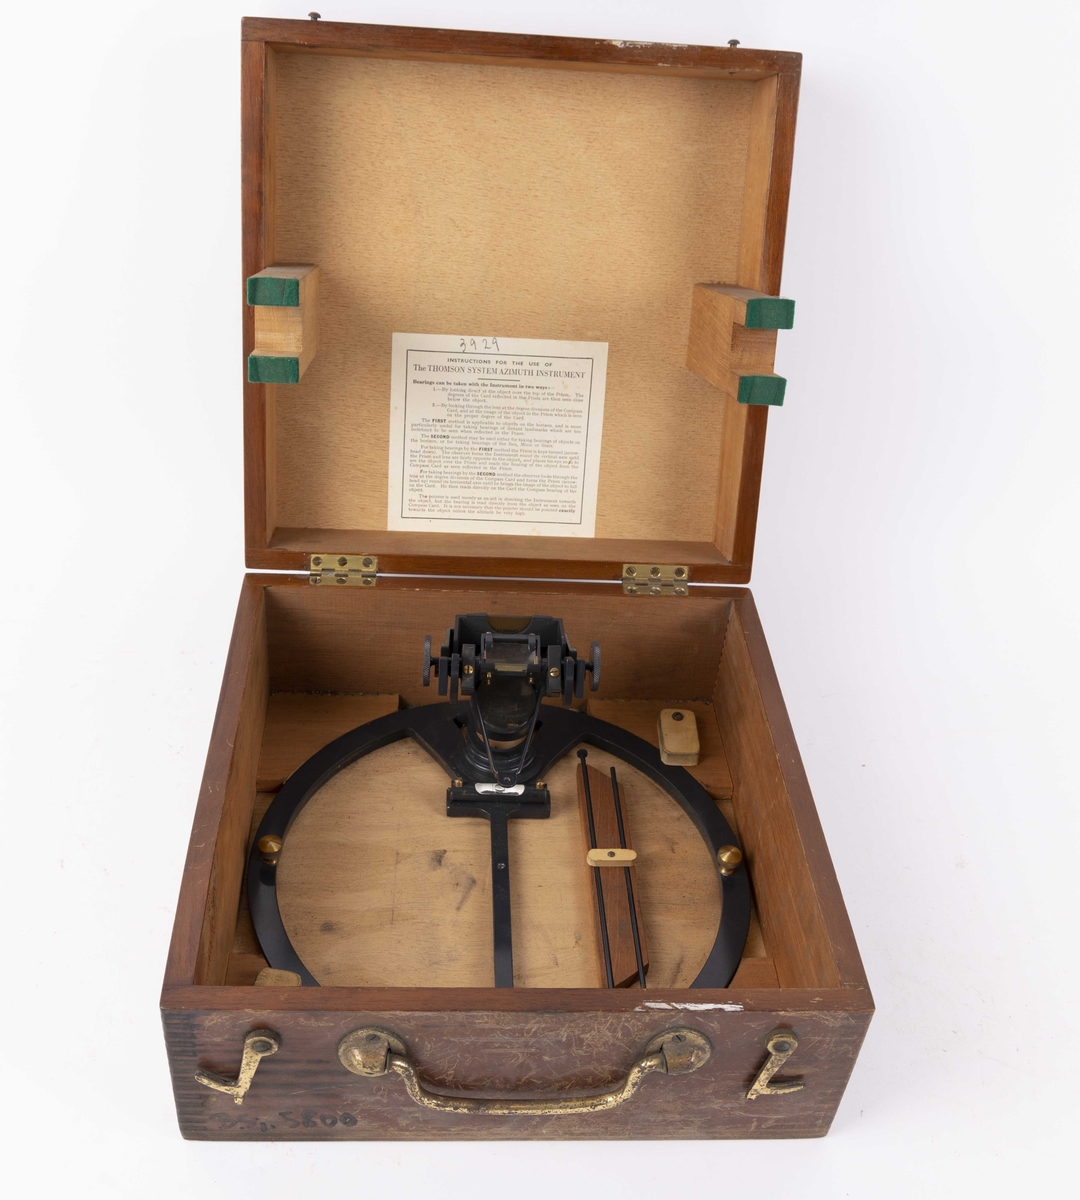 Gyro-kompass trolig fra 1950-årene. Azimuth-speil med speil og vater montert på  kompassring. Ligger i trekasse med lokk. I trekassen er også to runde stag/pinner (ukjent bruk).